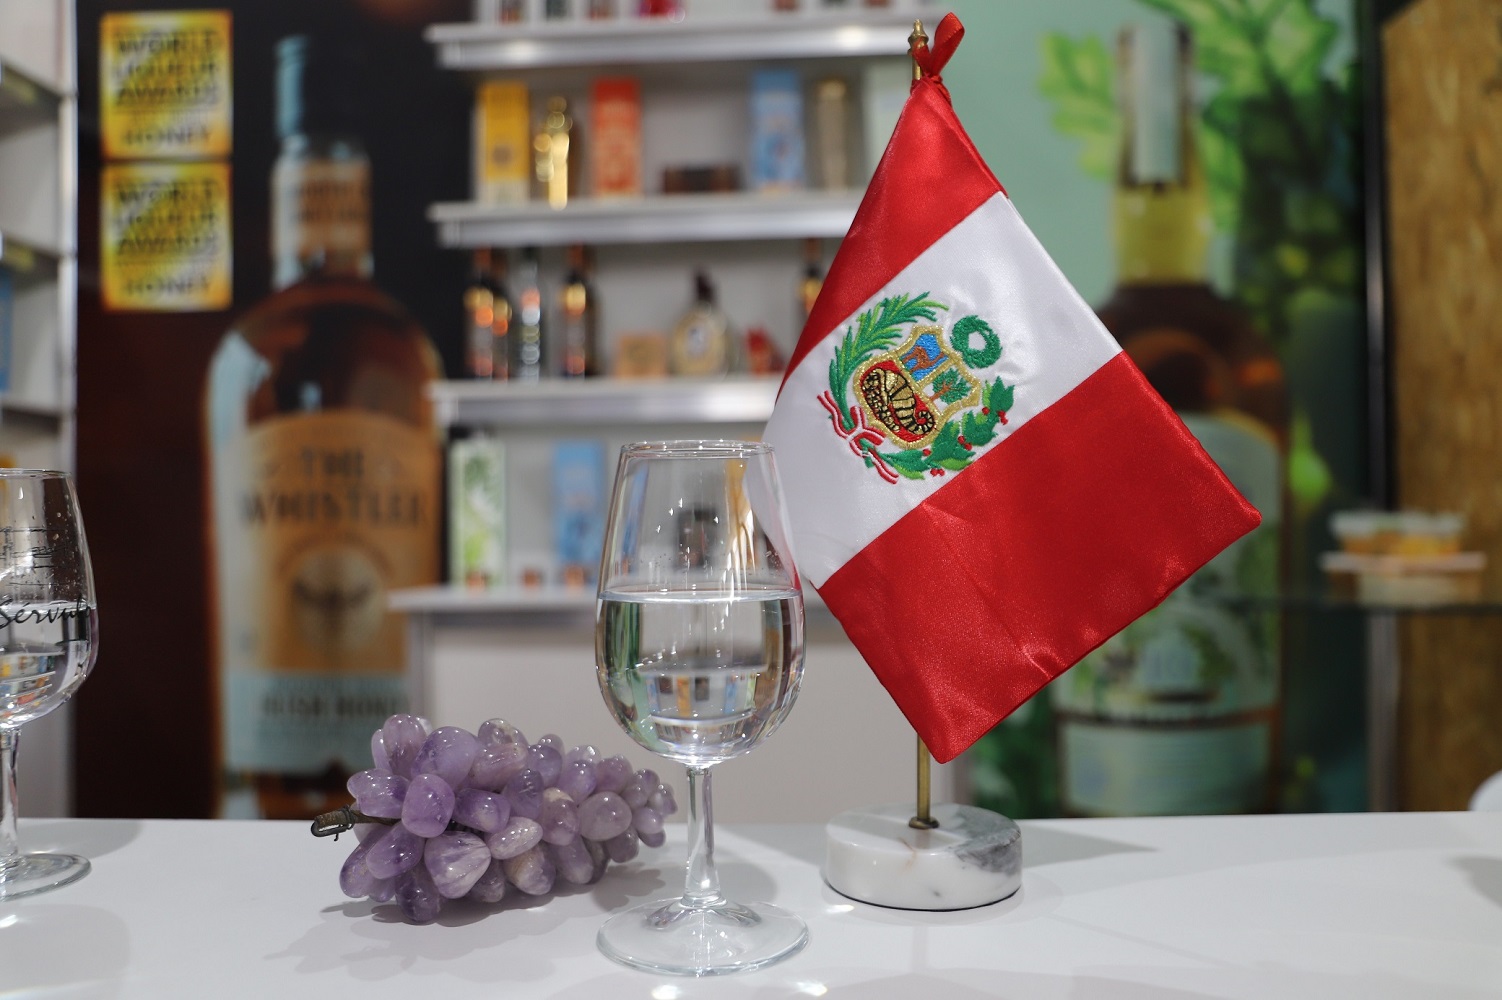 El Pisco, la bebida bandera peruana y sus variedades, vinos, macerados, brandy y otros; ven con optimismo el desarrollo en este sector.